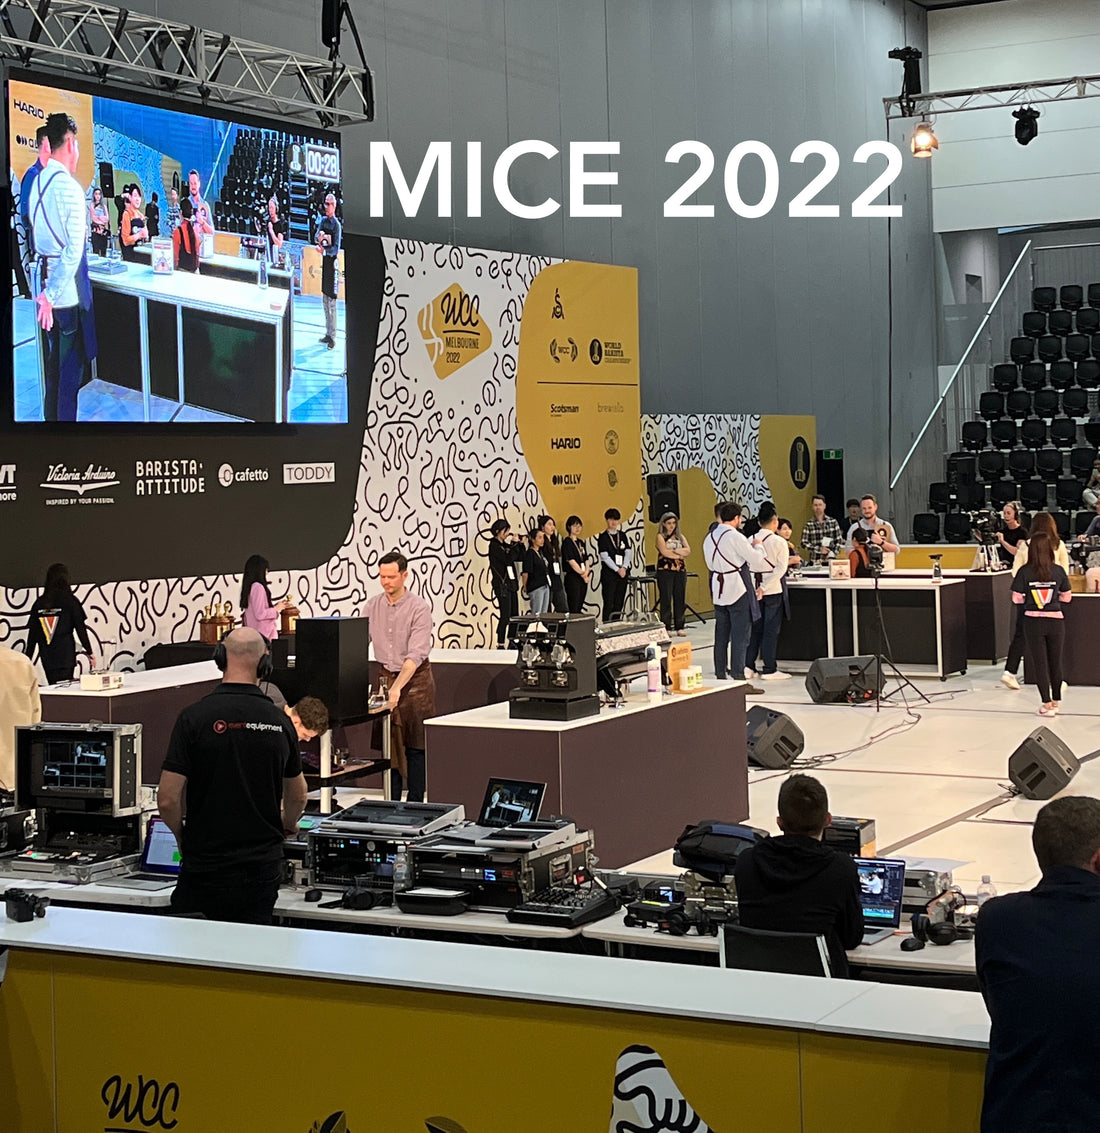 MICE 2022 - My week at MICE